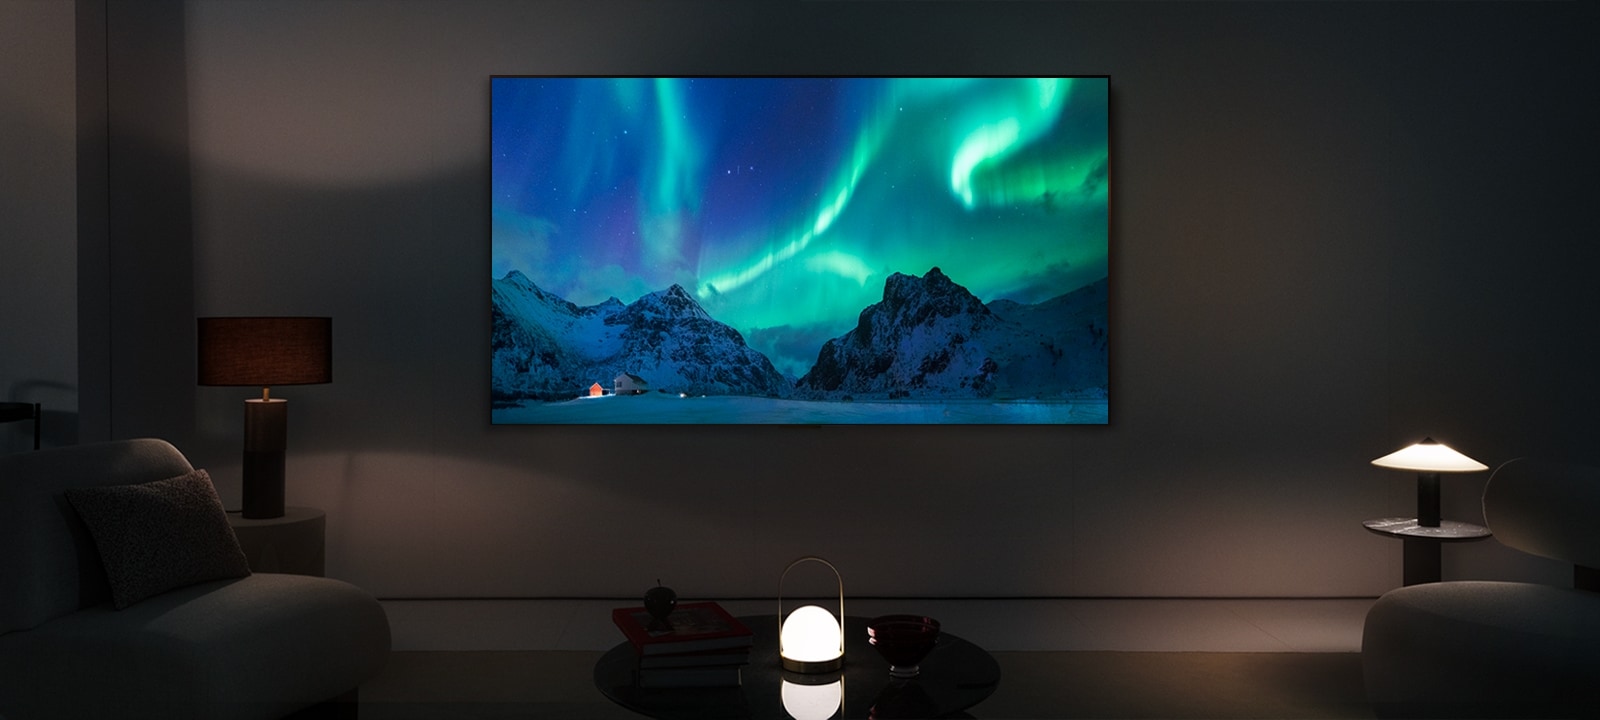 Un TV LG OLED dans un espace de vie moderne de nuit. L’image à l’écran d’une aurore boréale est affichée, avec des niveaux de luminosité idéals.